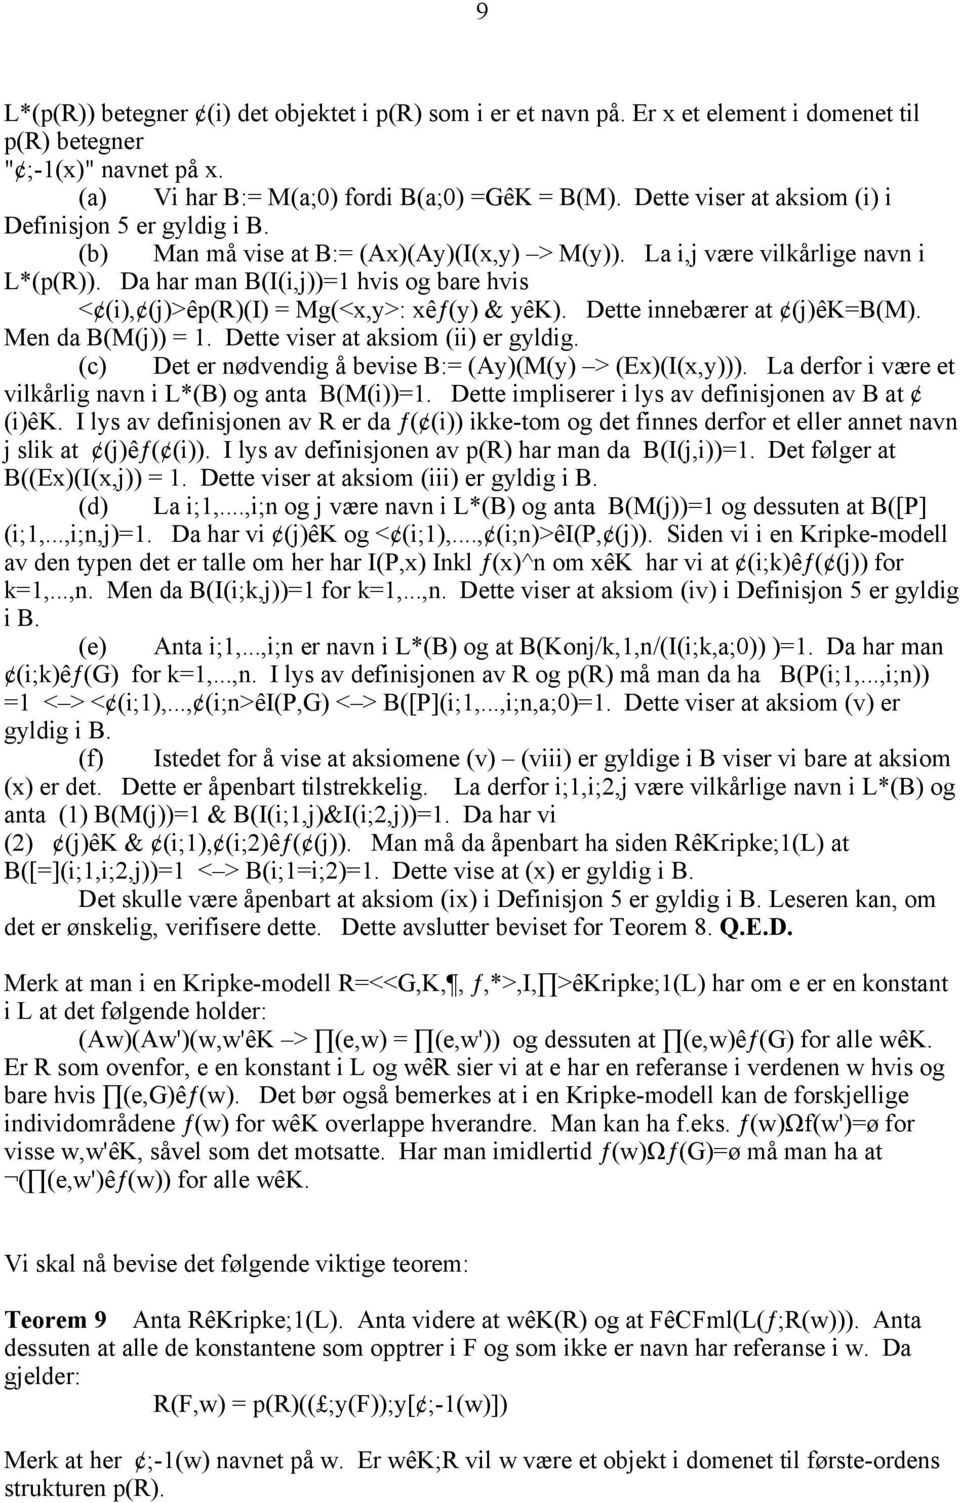 Da har man B(I(i,j))=1 hvis og bare hvis < (i), (j)>êp(r)(i) = Mg(<x,y>: xêƒ(y) & yêk). Dette innebærer at (j)êk=b(m). Men da B(M(j)) = 1. Dette viser at aksiom (ii) er gyldig.